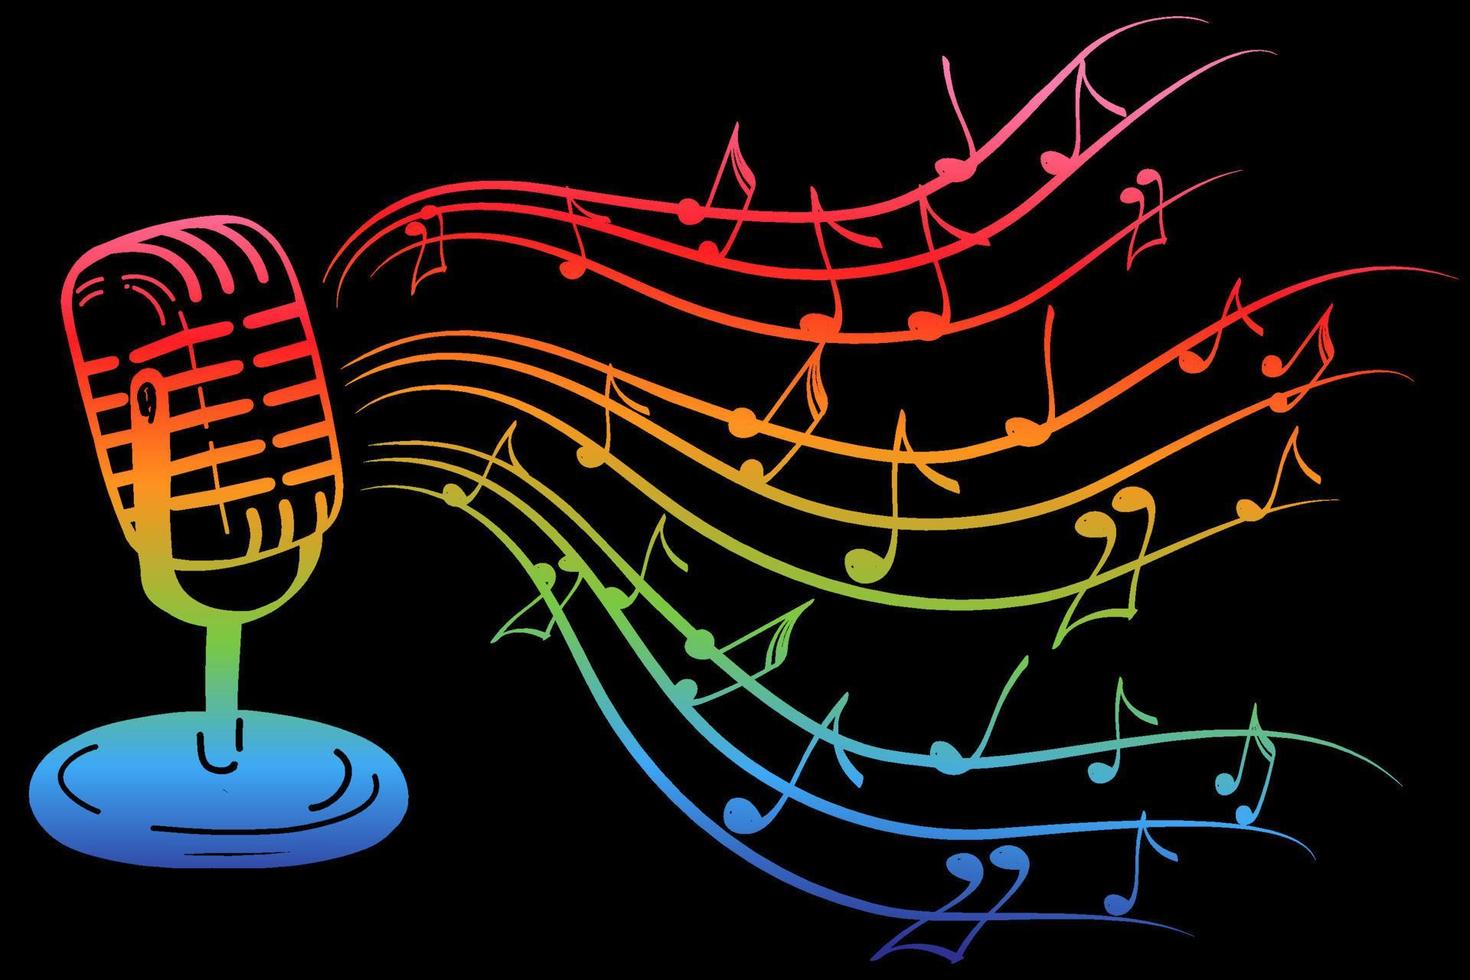 karaoke muziek icoon in doodle stijl. vintage microfoon met notities cartoon vectorillustratie op zwarte geïsoleerde achtergrond. audioapparatuurconcept met helder regenboogmelodie-effect vector